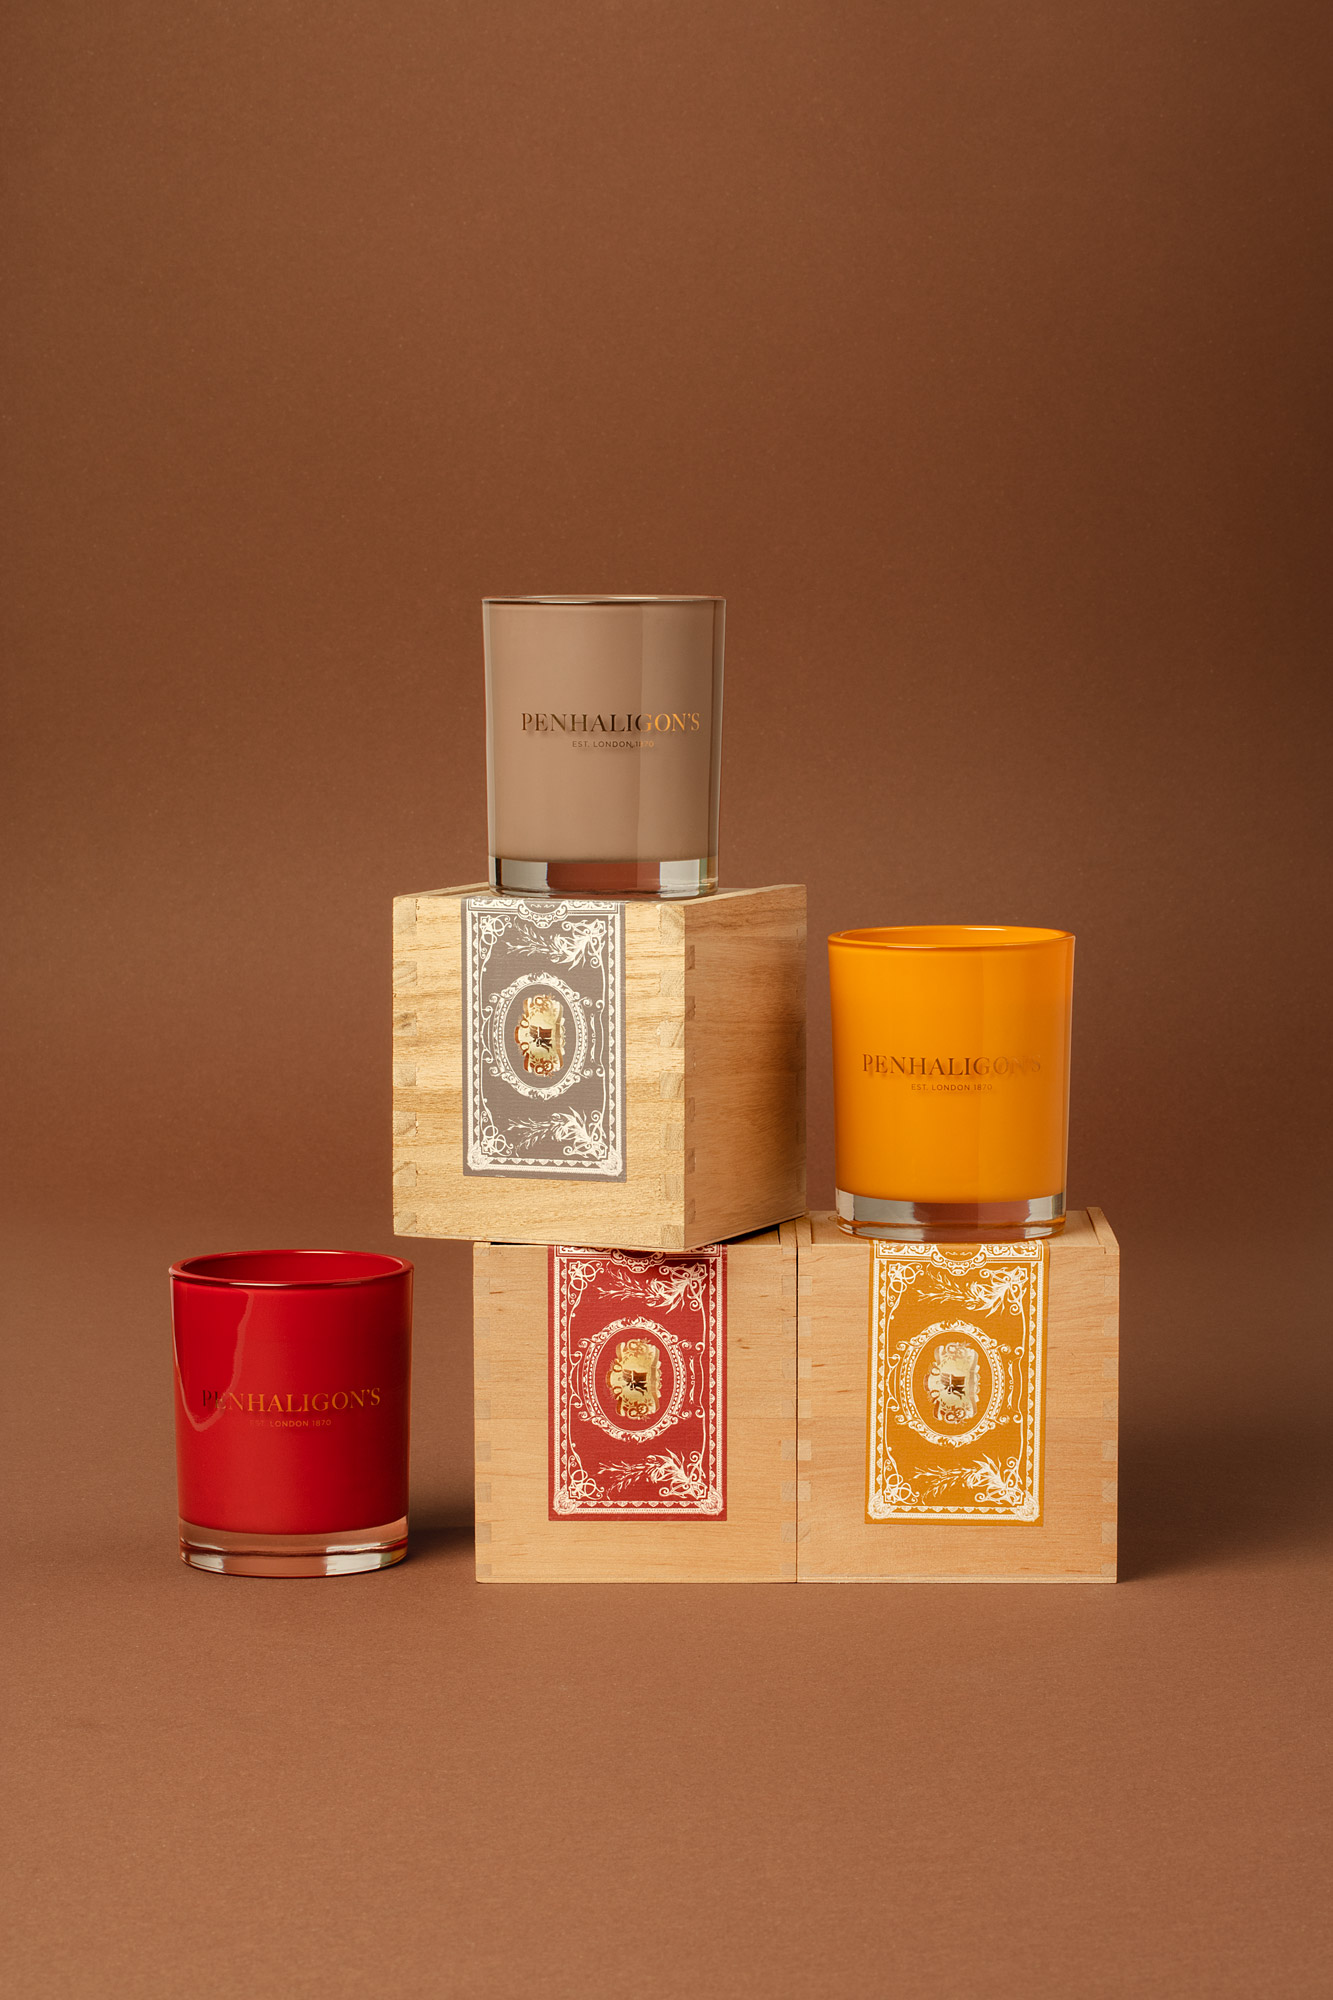 Penhaligon's Trade Routes candles packaging design - Noreste Studio